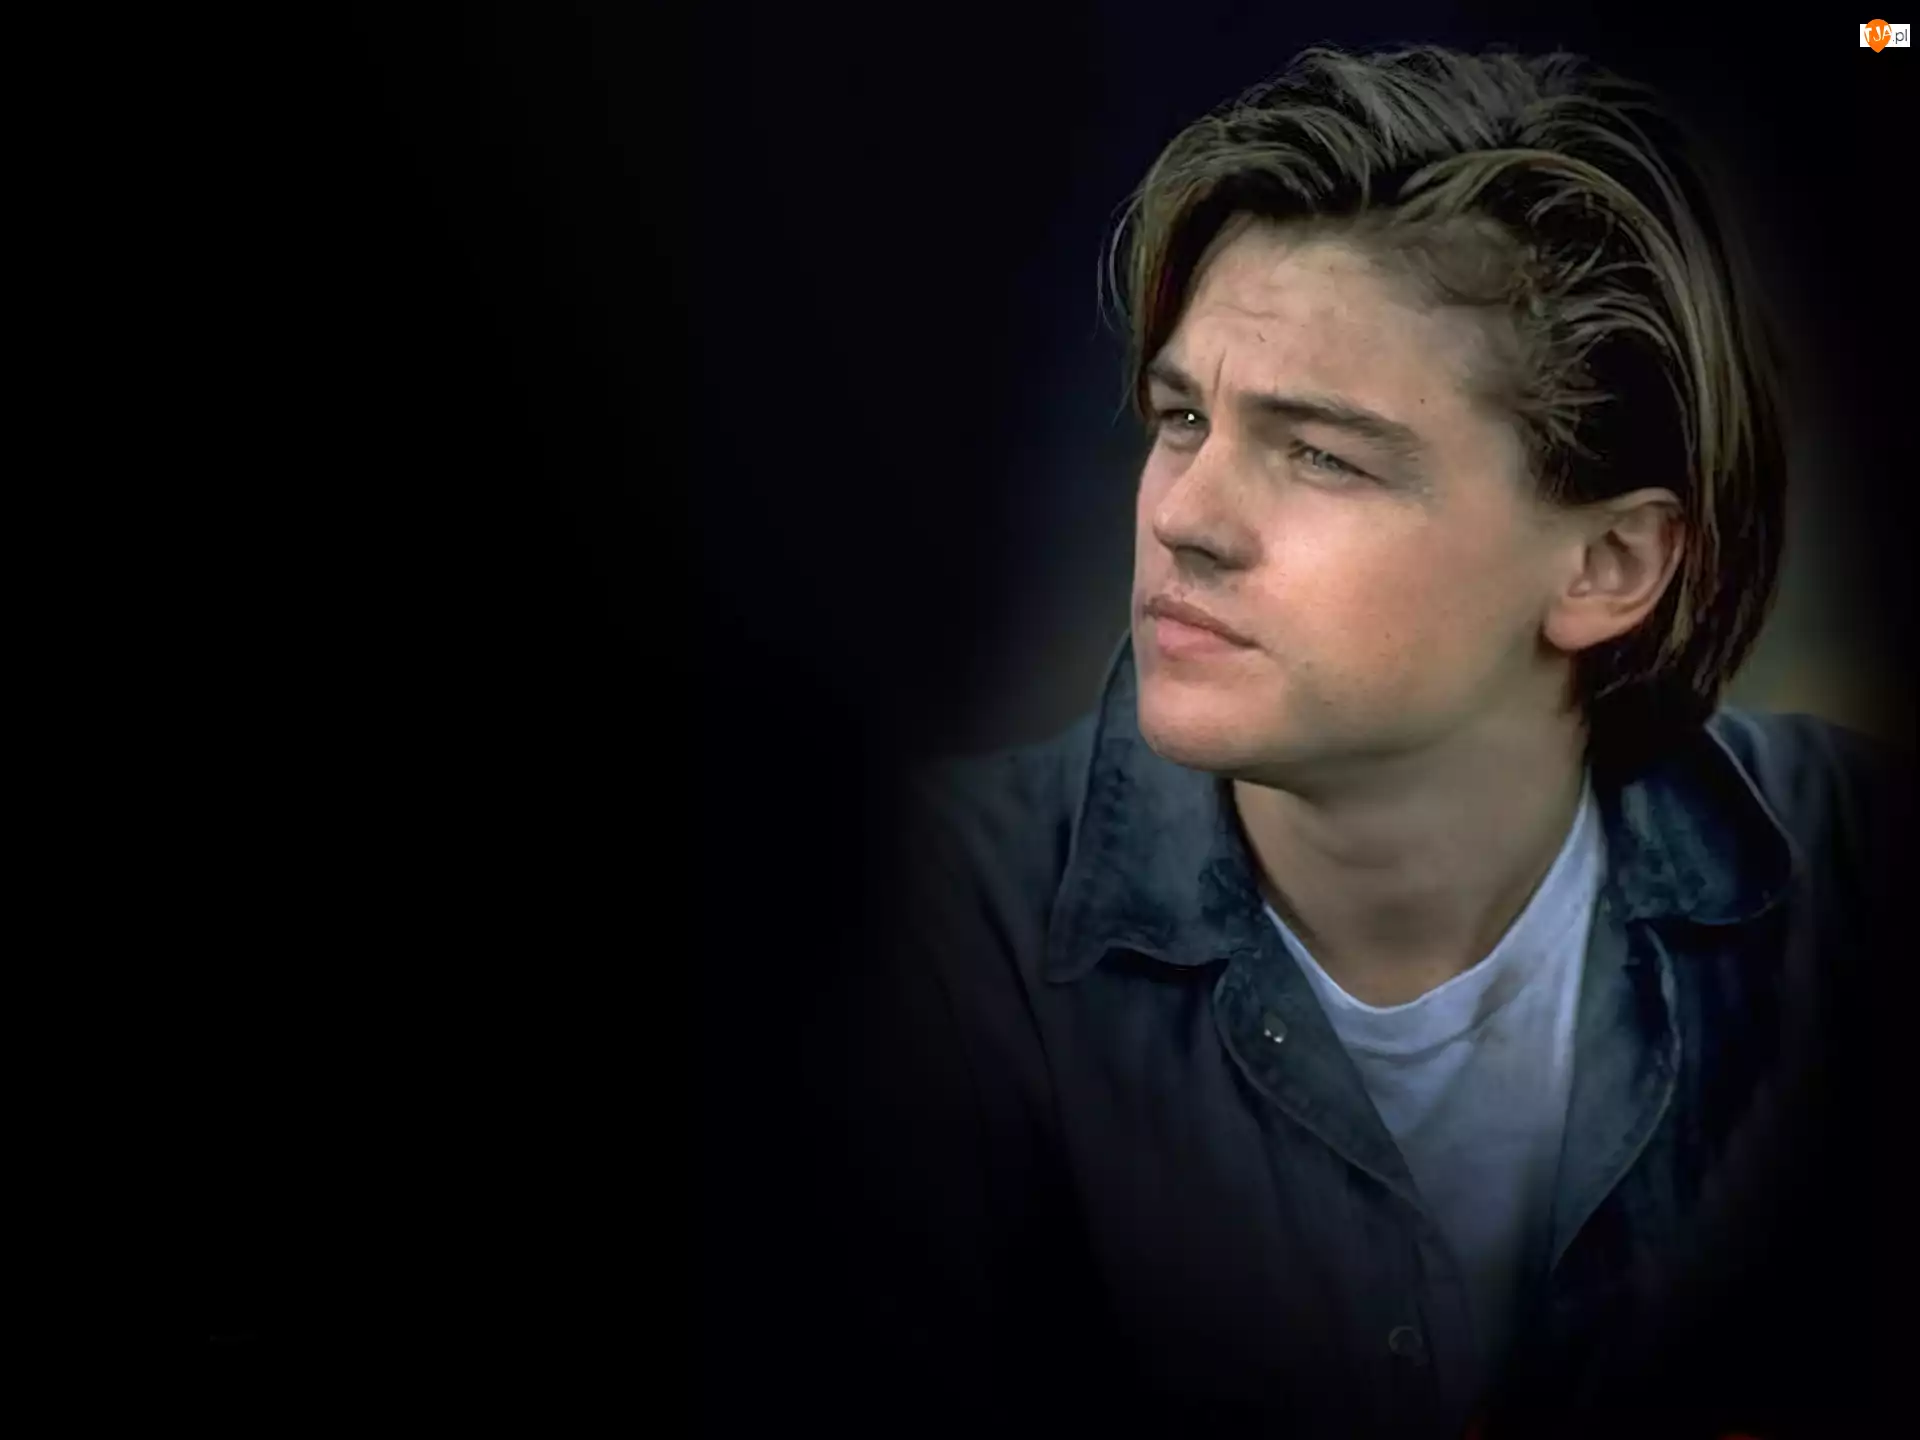 Leonardo DiCaprio, długie włosy